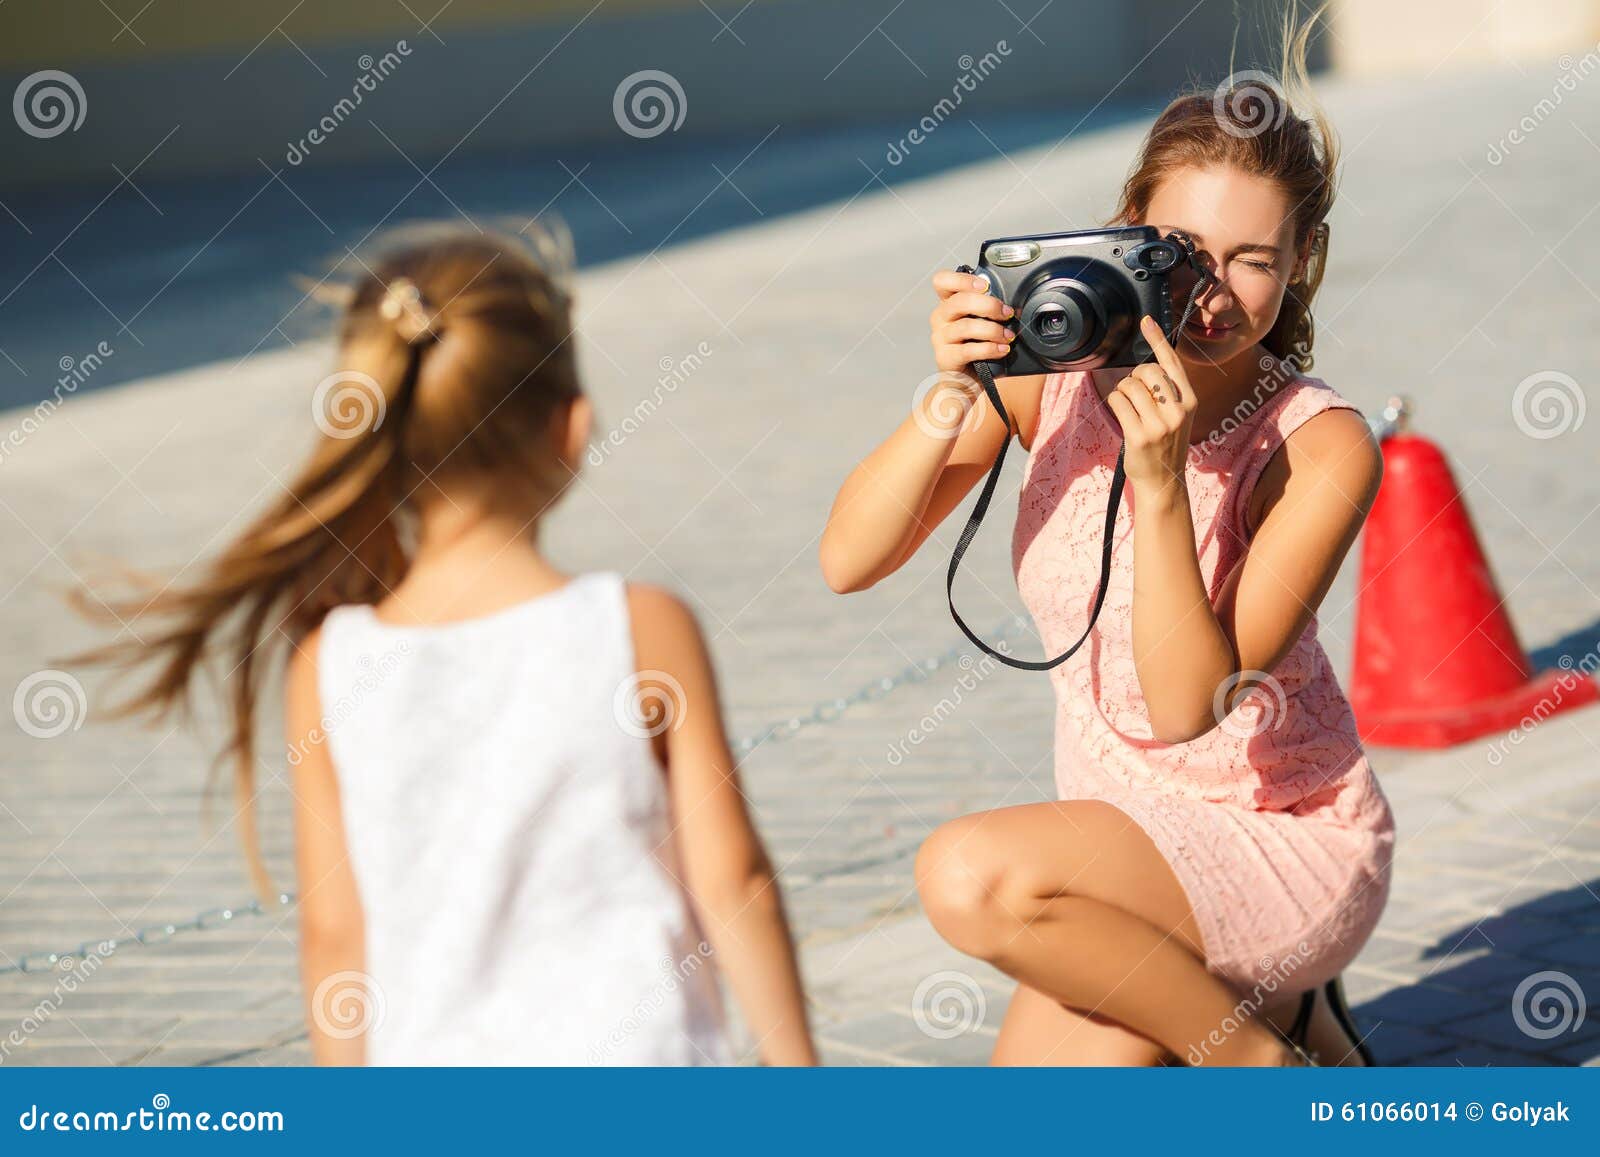 Мама и дочь веб камера